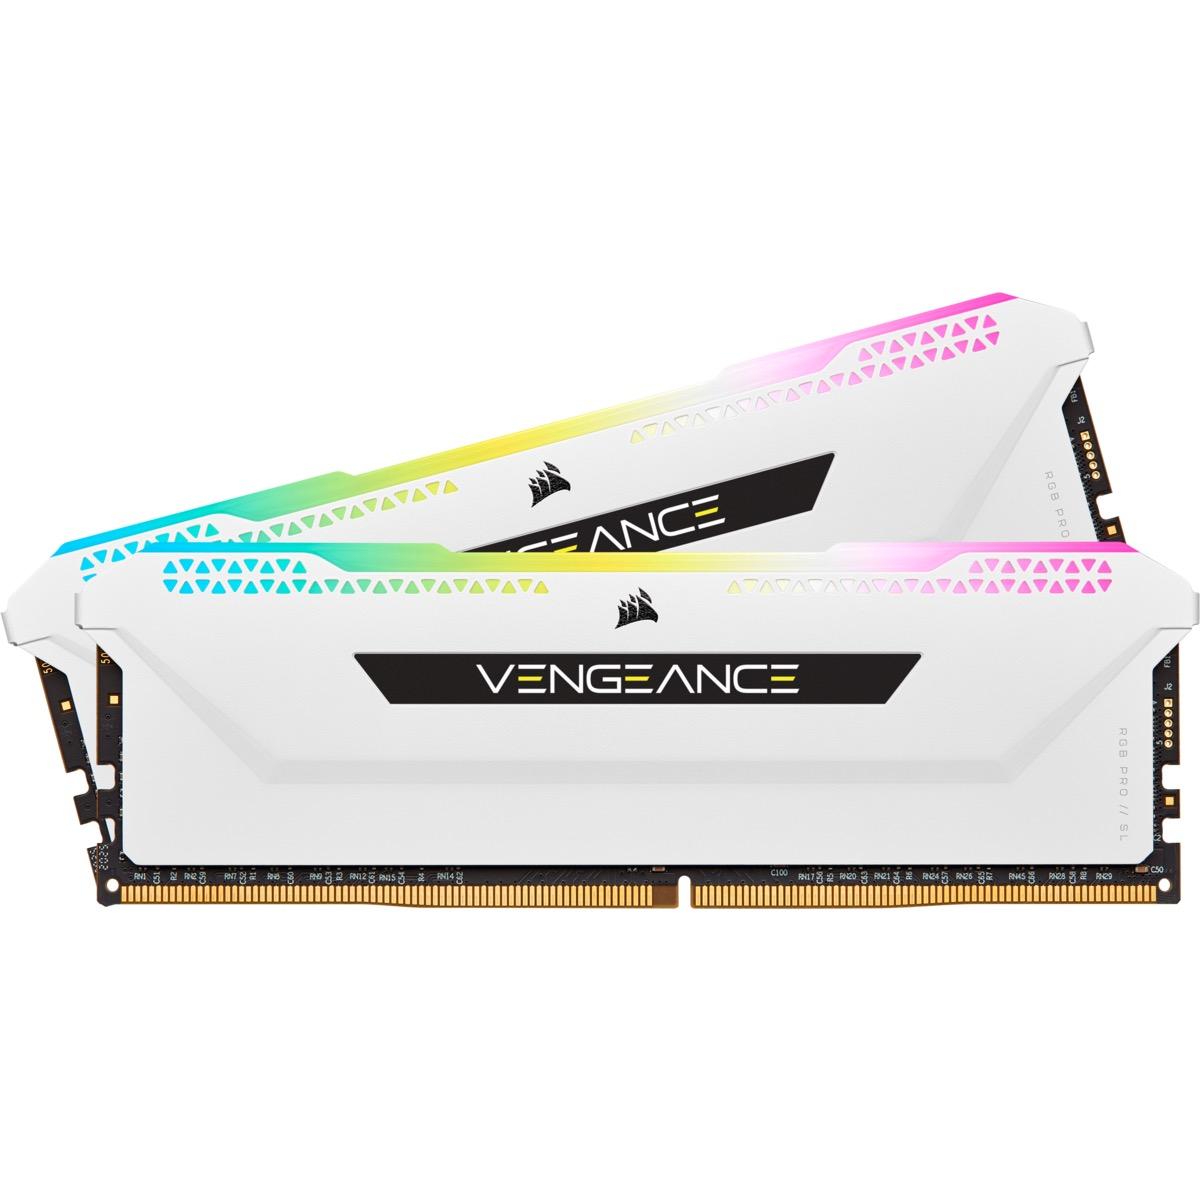 Памет Corsair Vengeance PRO SL RGB White 32GB(2x16GB) DDR4 PC4-25600 3200MHz CL16 CMH32GX4M2E3200C16W AMD Ryzen Optimized